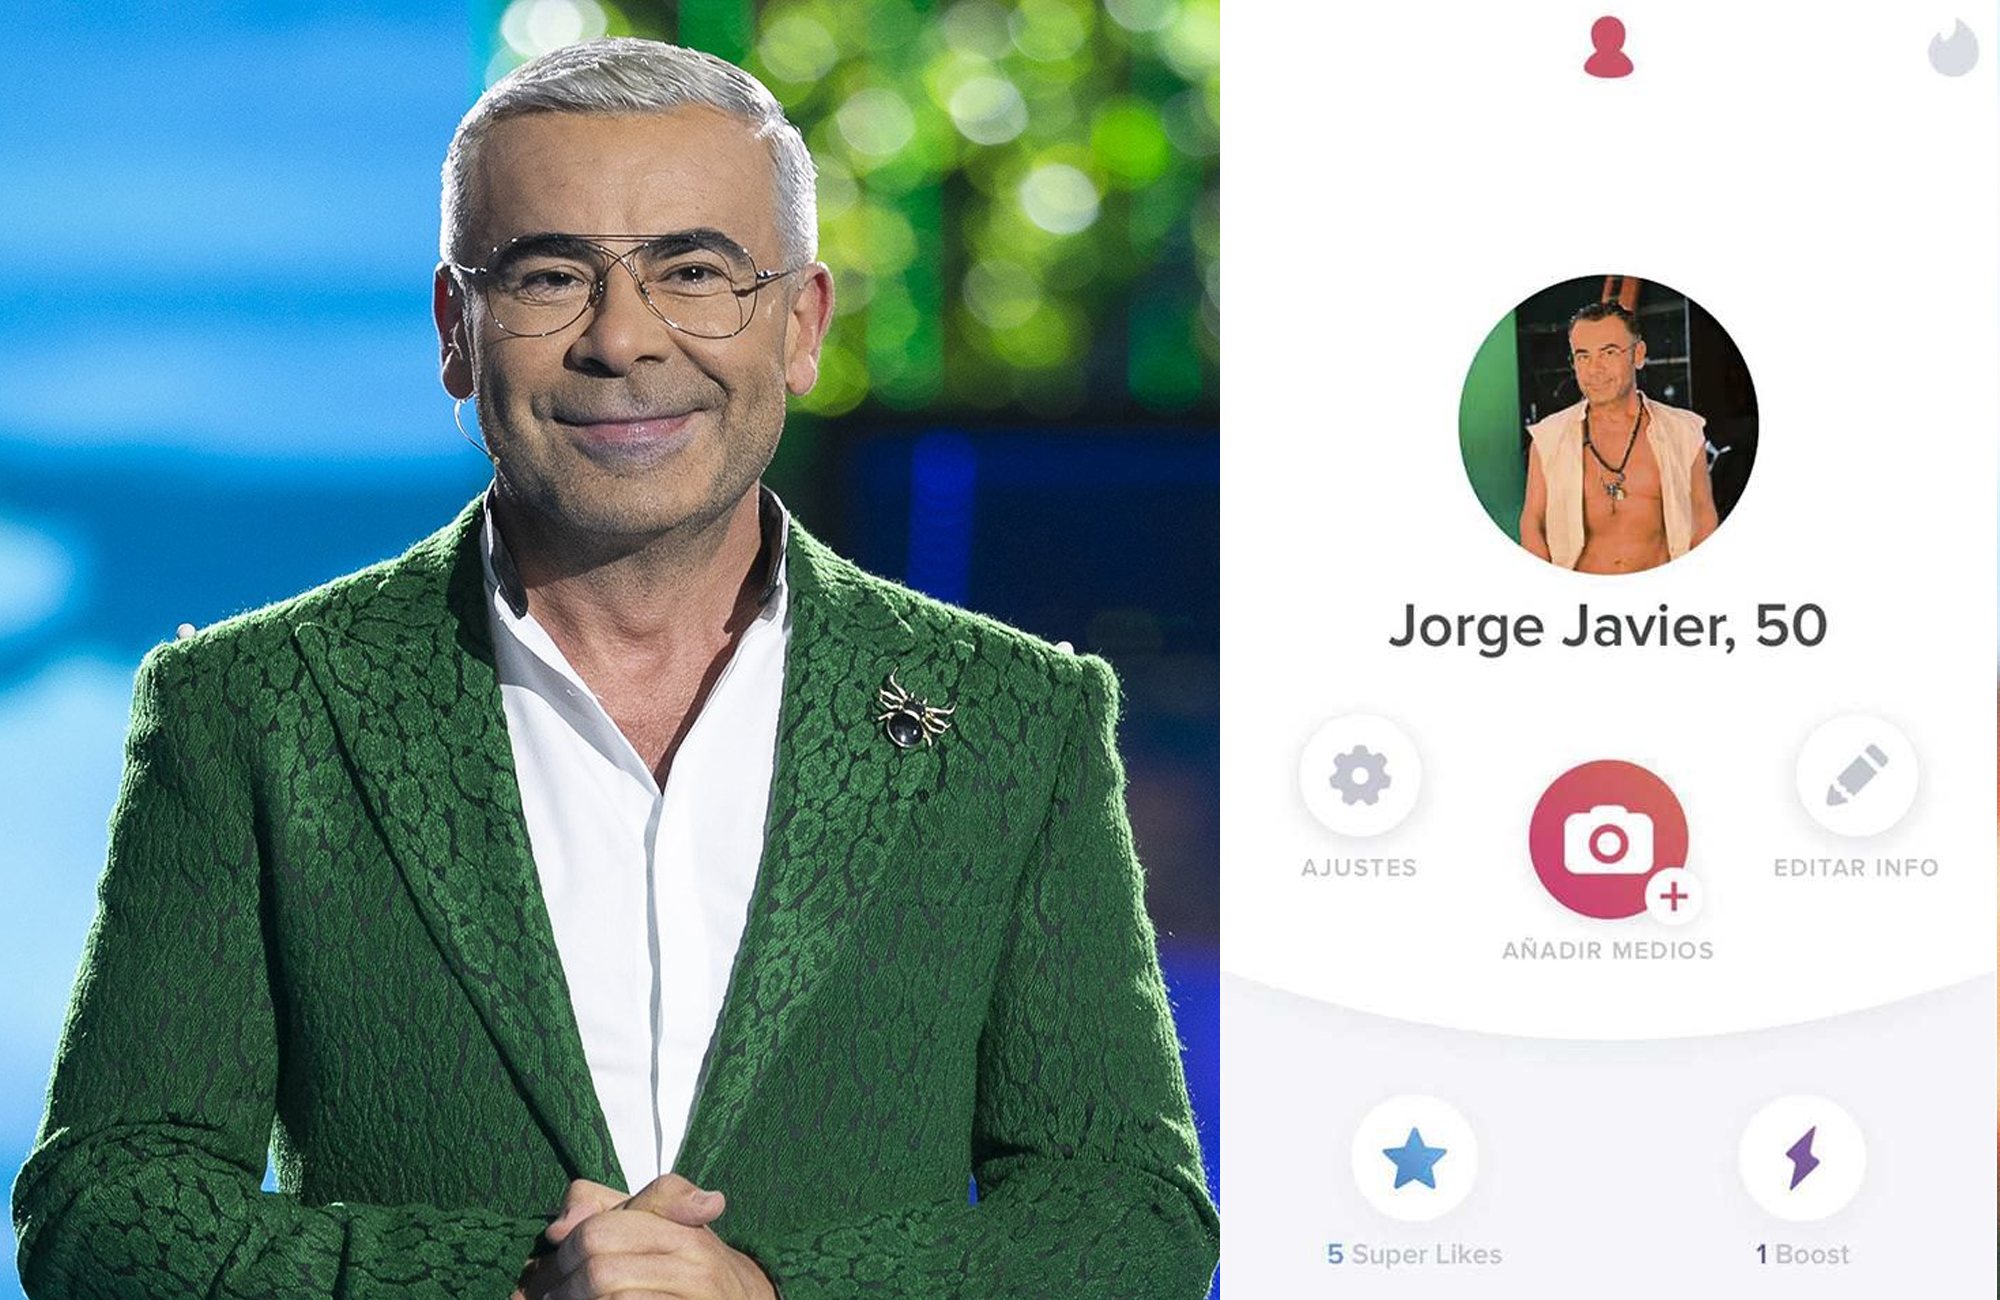 Jorge Javier Vázquez y su perfil de Tinder